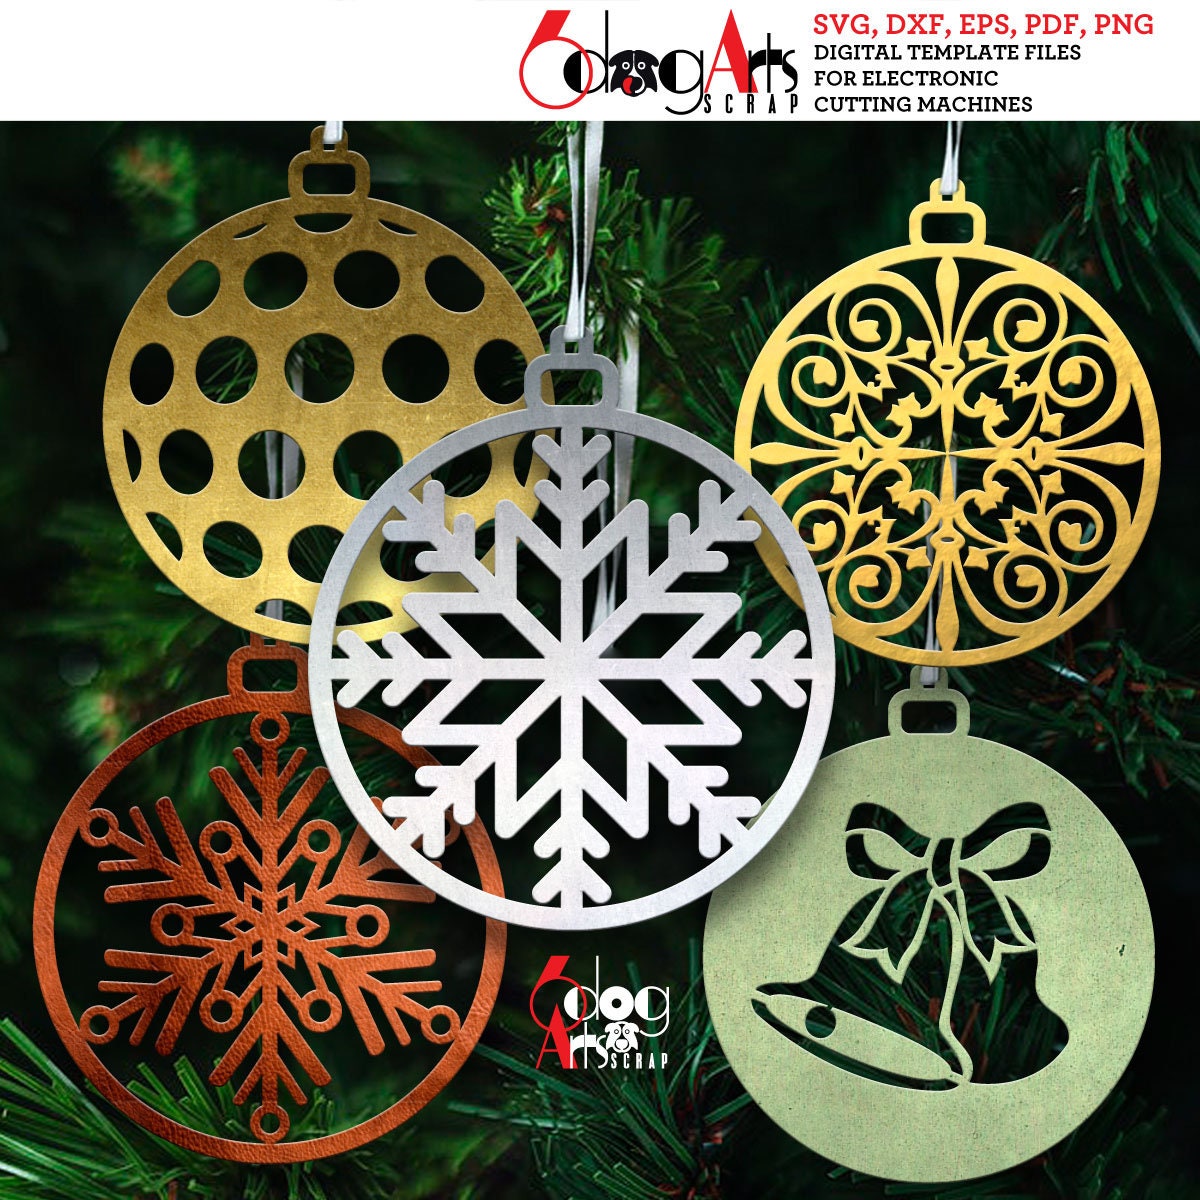 1Pc Shiny Rainbow Honeycomb Snowflake Xmas Tree Star Ornament 3D Iridescent  Christmas Tree Decorations New Year Navidad Gifts